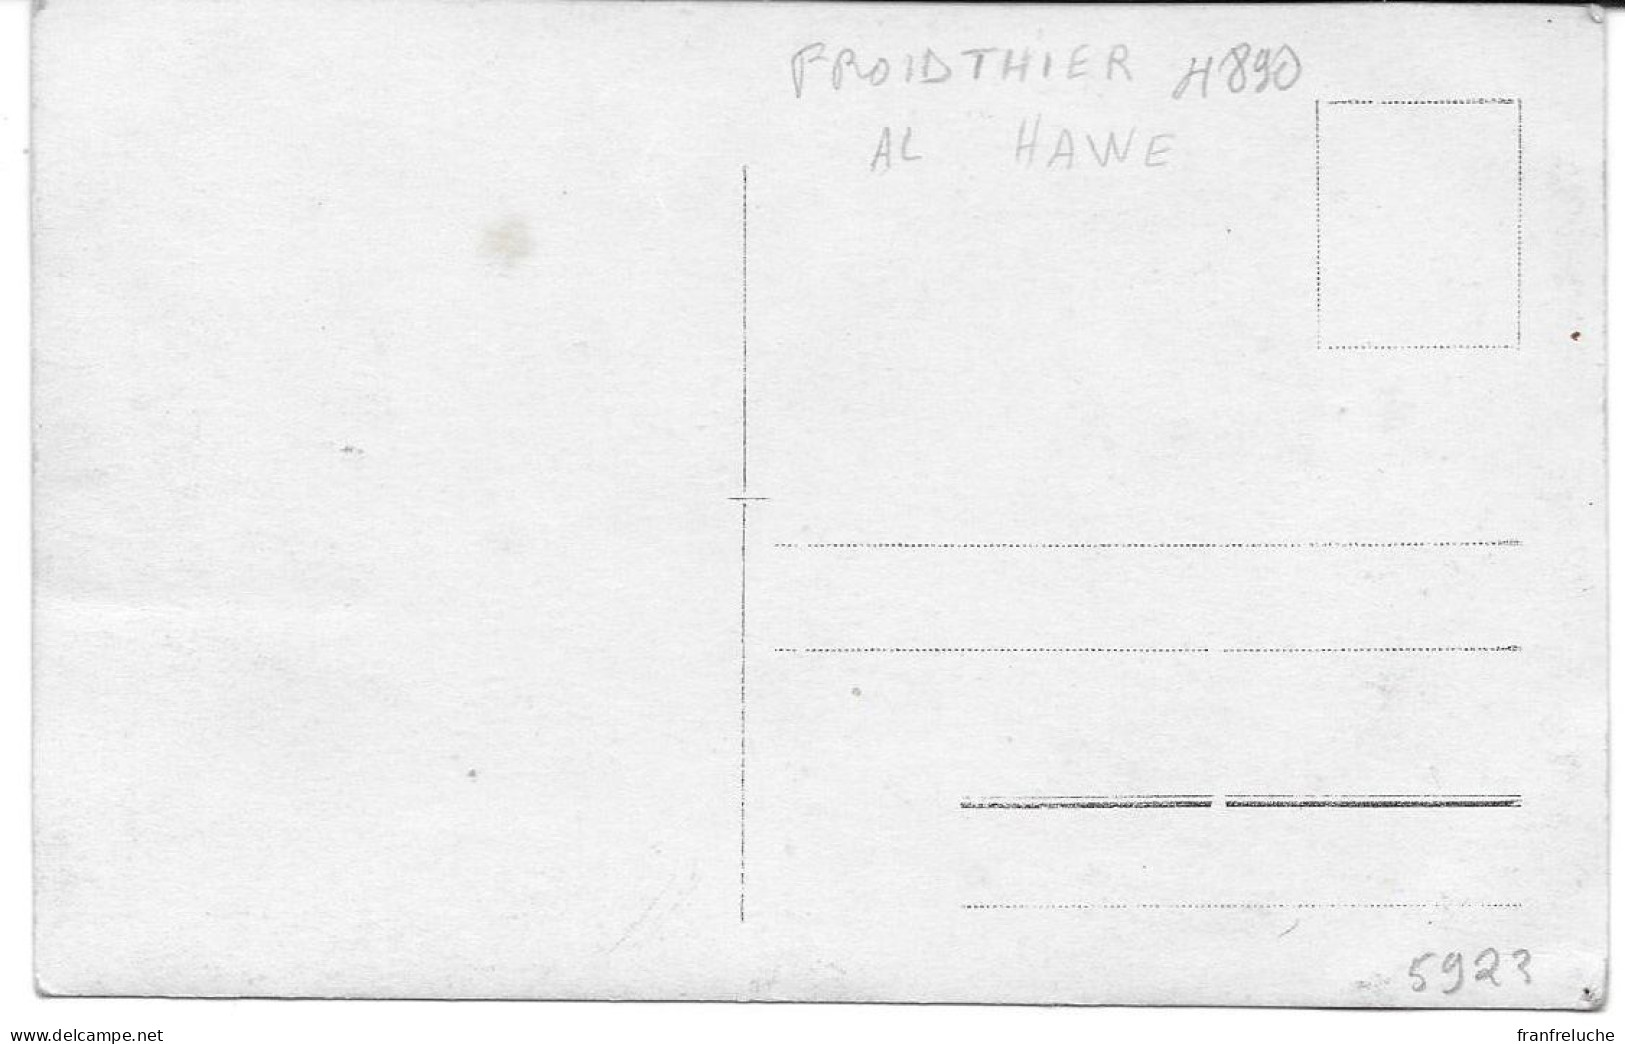 FROIDTHIER (4890) FERME AL HAWE - Thimister-Clermont